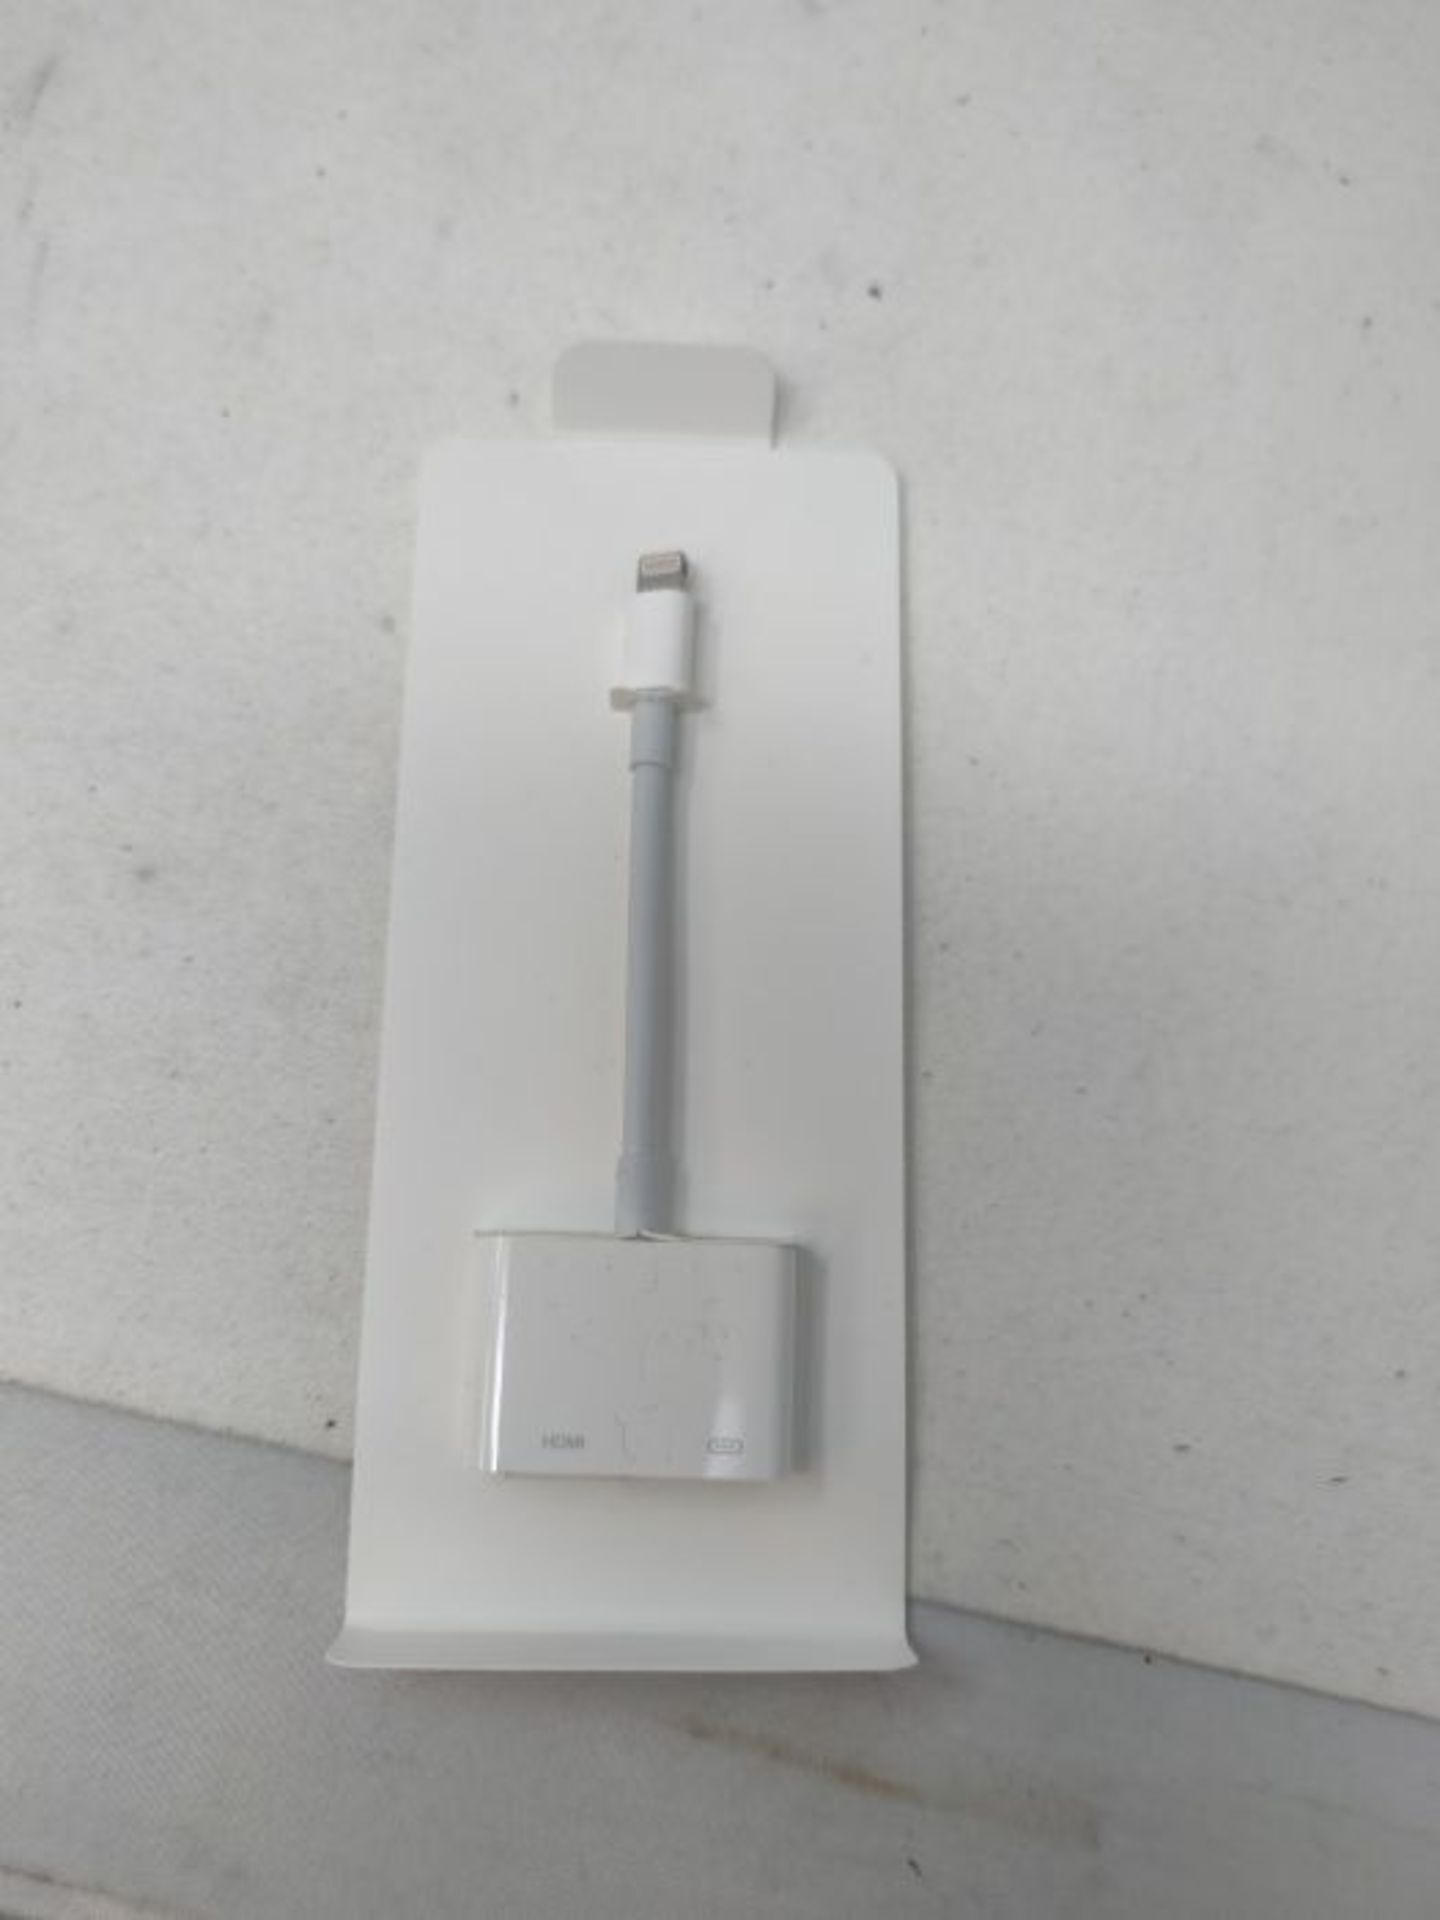 Apple Lightning Digital AV Adapter - Image 3 of 3